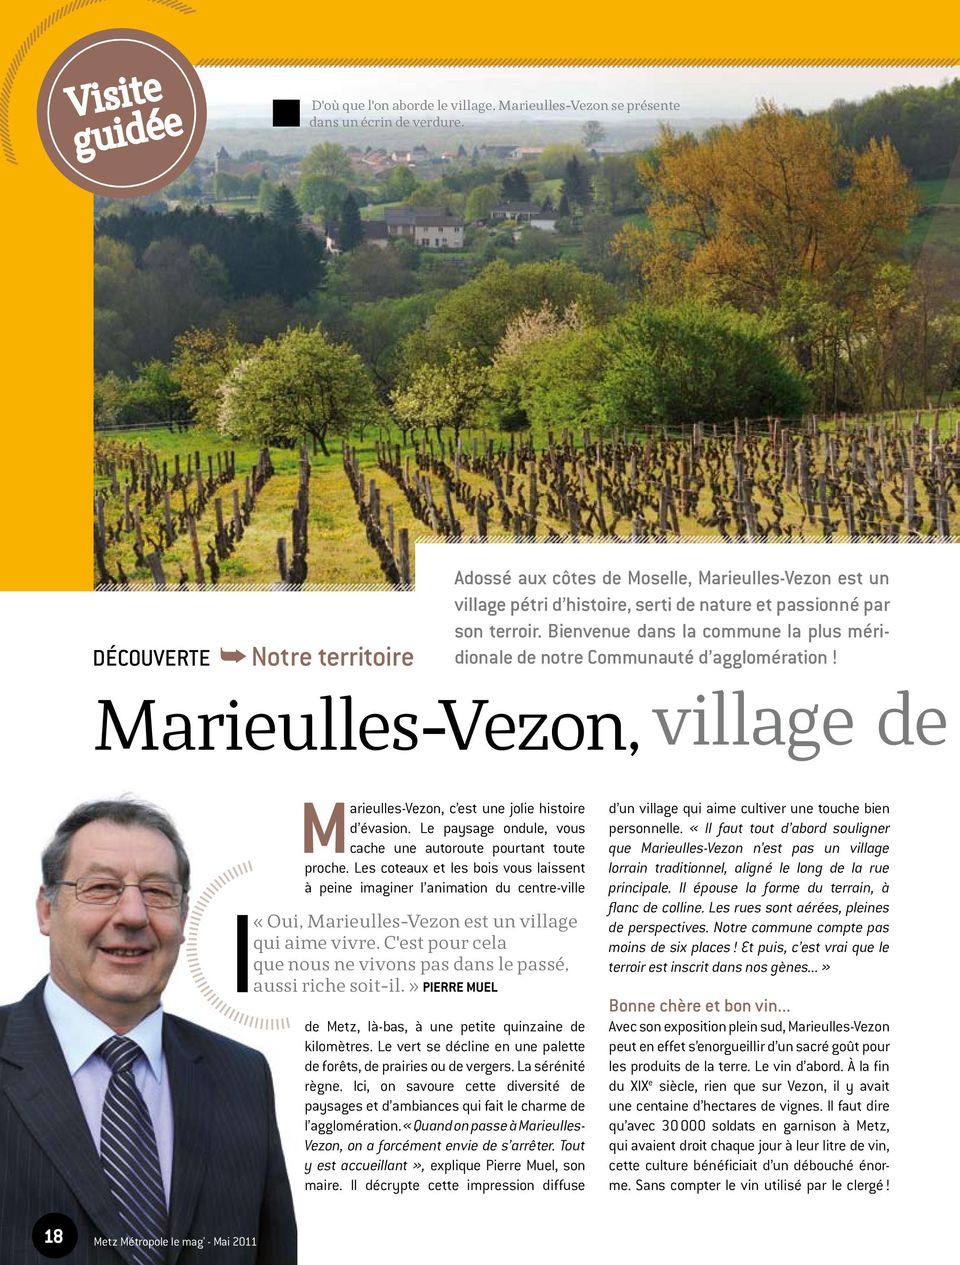 Bienvenue dans la commune la plus méridionale de notre Communauté d agglomération! Marieulles-Vezon, village de Marieulles-Vezon, c est une jolie histoire d évasion.